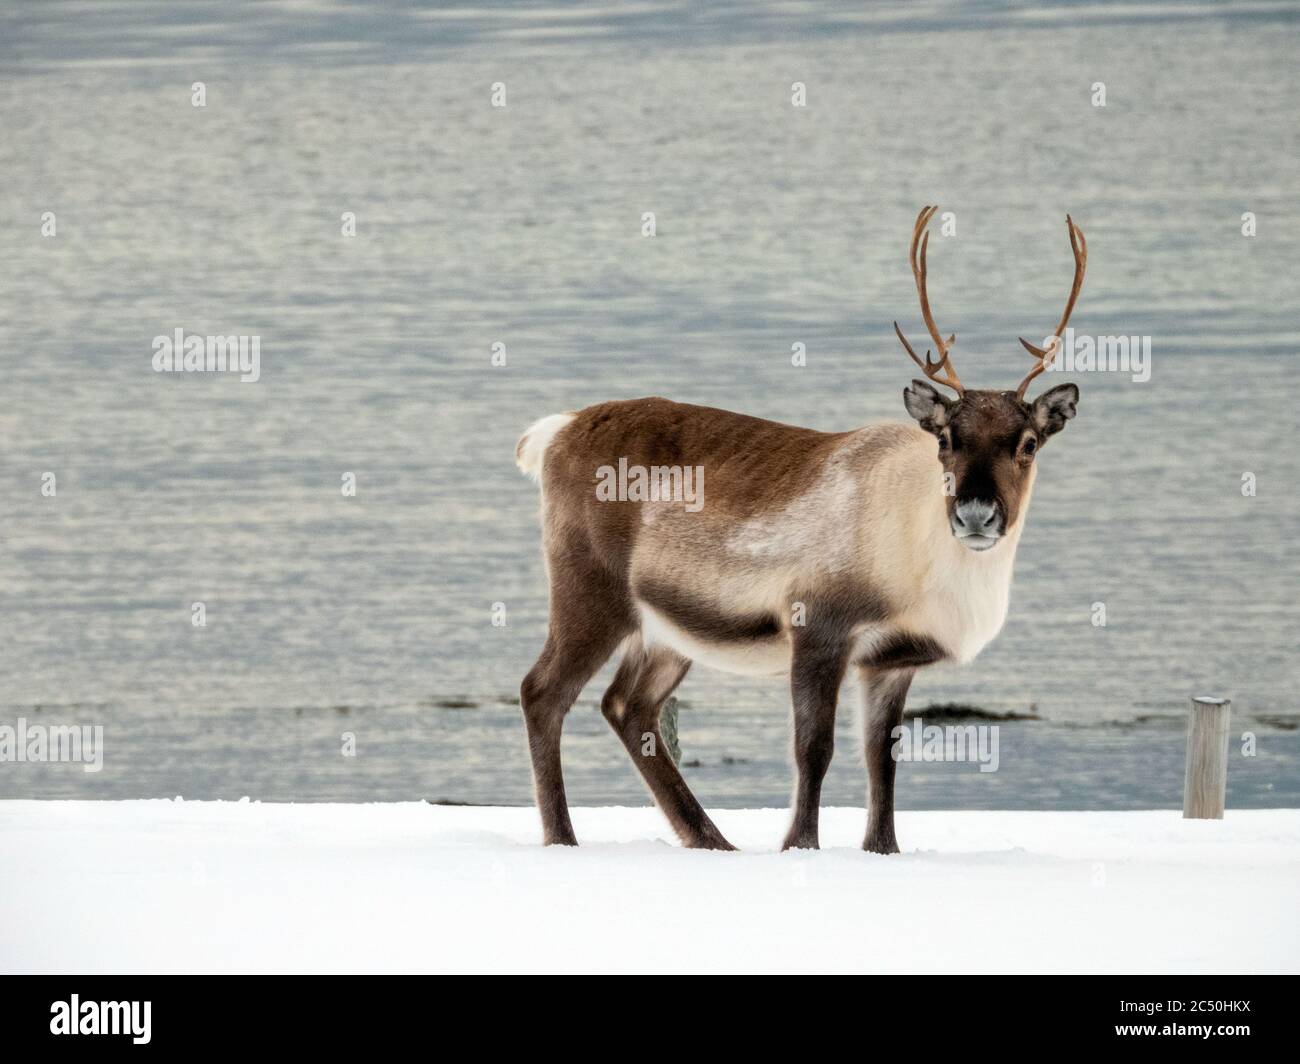 Renne européen, caribou européen (Rangifer tarandus tarandus), debout dans la neige, vue latérale, Norvège Banque D'Images